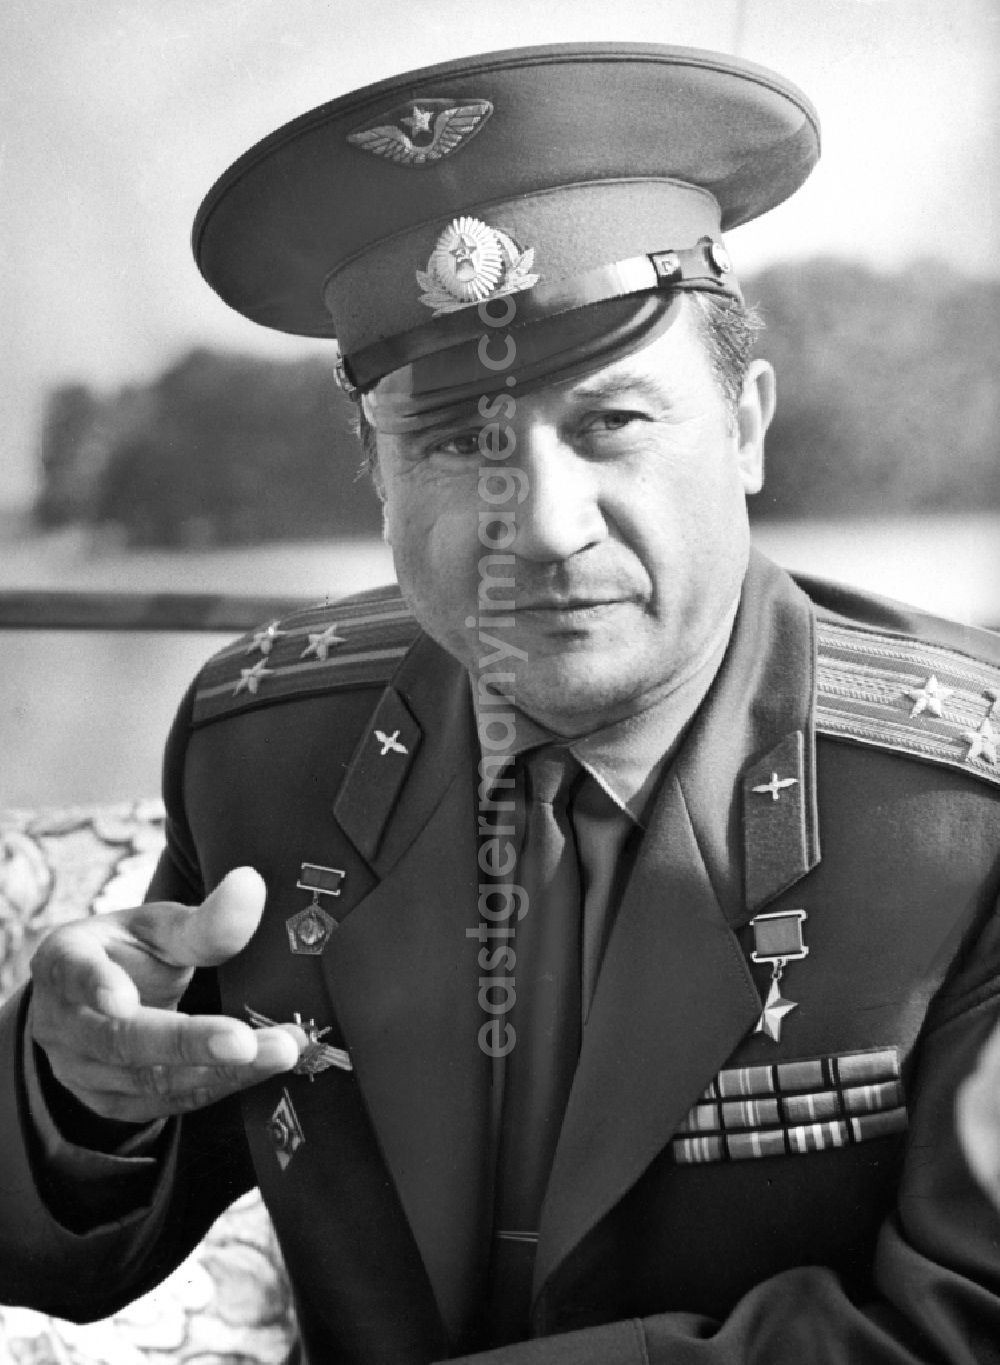 GDR image archive: Swjosdny Gorodok - Sternenstädtchen - Astronaut Colonel Anatoli Wassiljewitsch Filiptschenko in Swjosdny Gorodok - Sternenstaedtchen in Russland